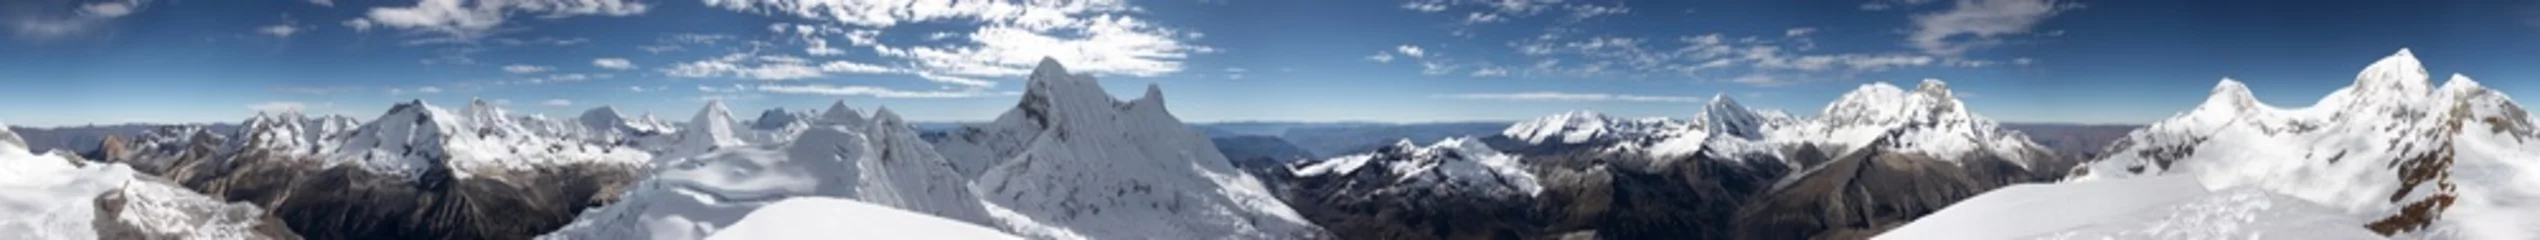 Vlies Fototapete Panoramafotos Gipfel 360-Grad-Panorama